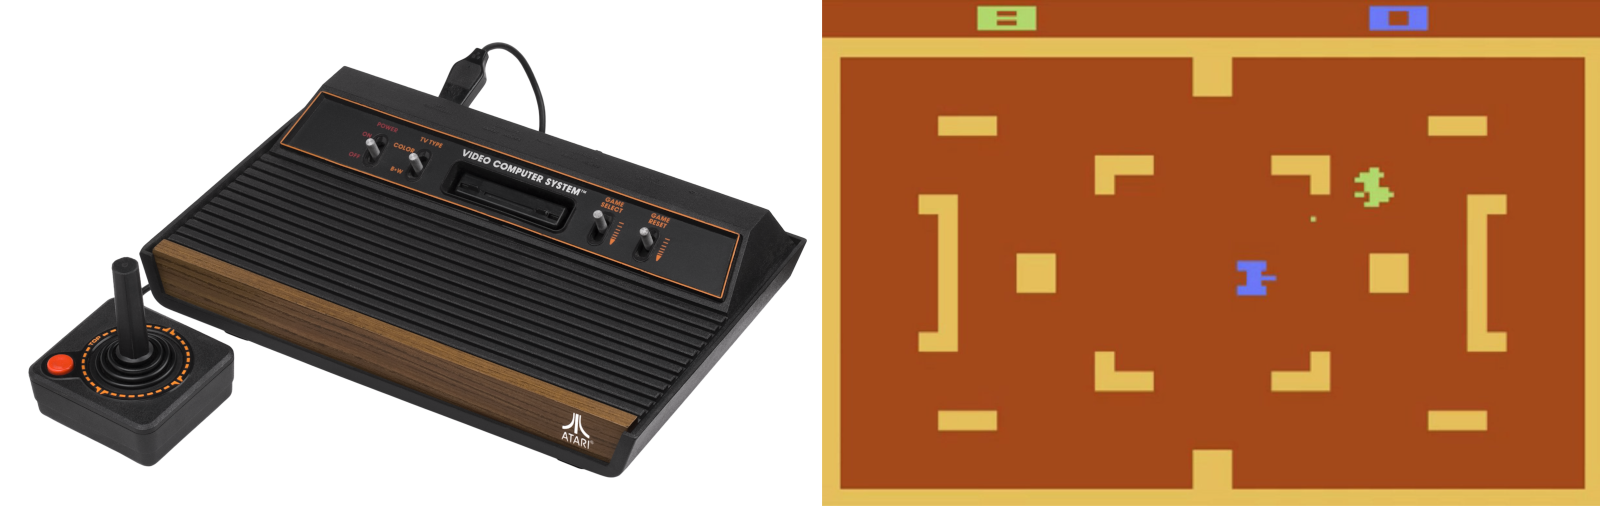 Как сделана Atari 2600: извлечь нечто (почти) из ничего - 1